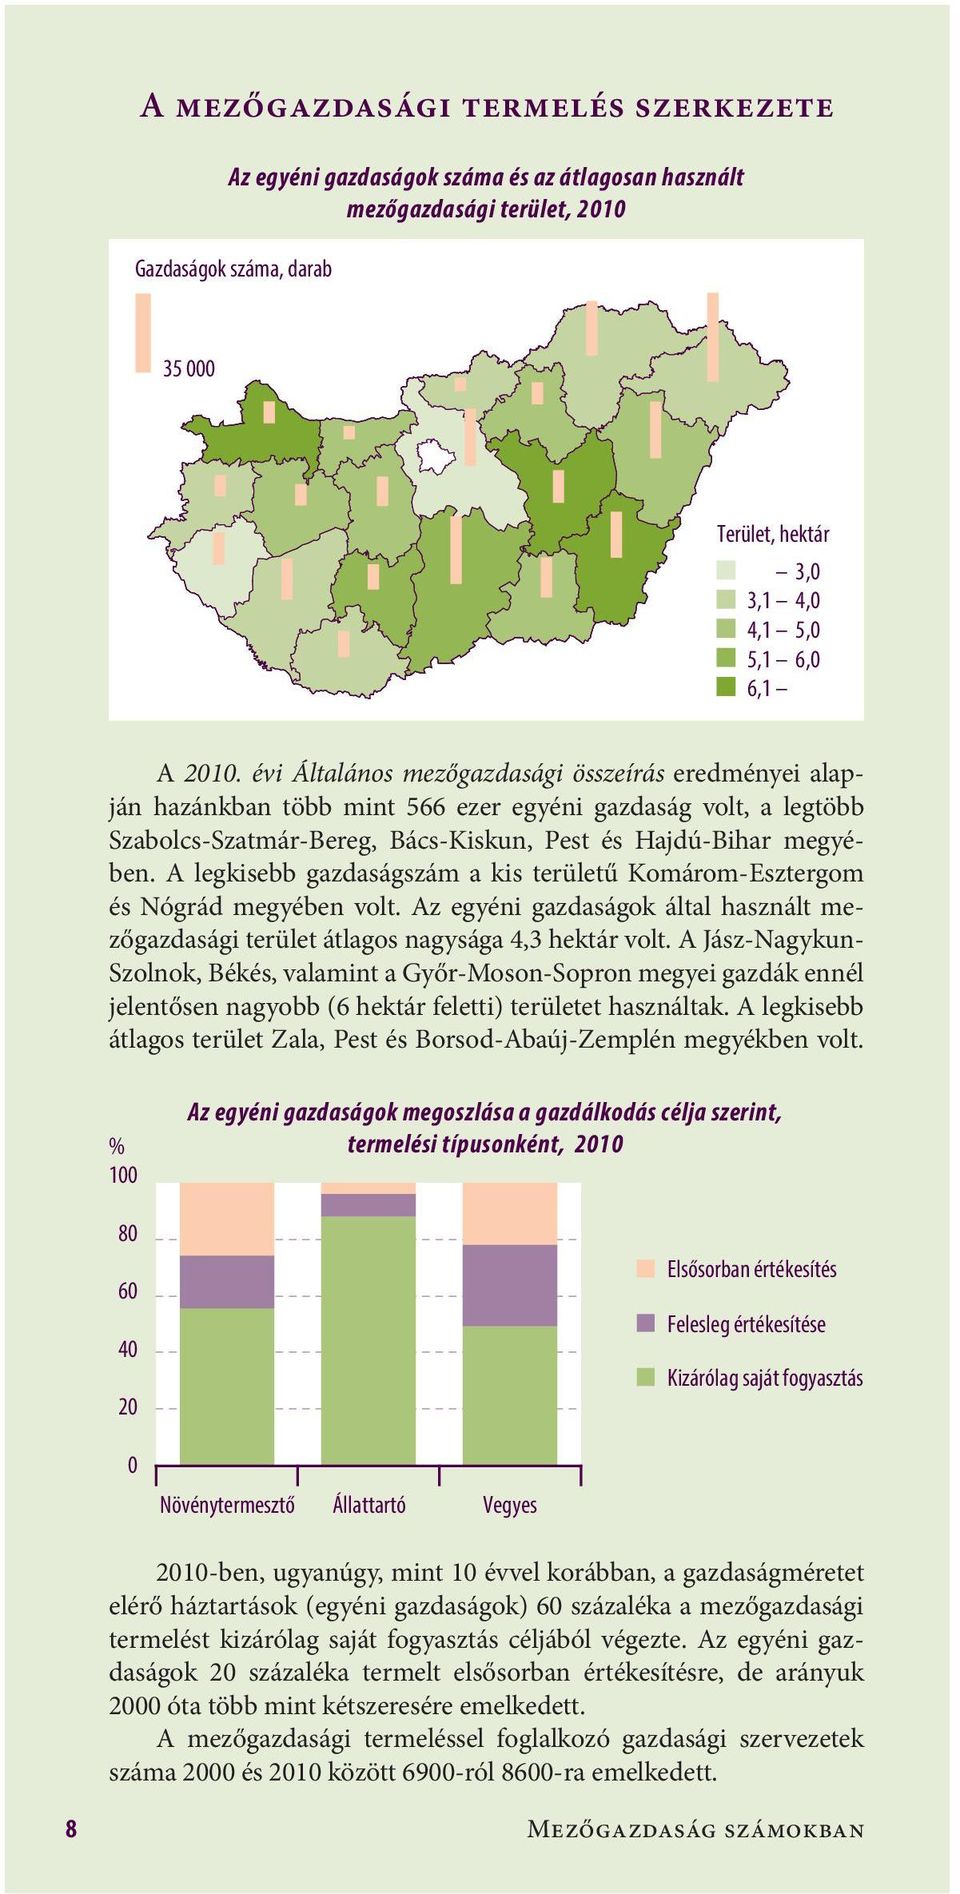 A legkisebb gazdaságszám a kis területű Komárom-Esztergom és Nógrád megyében volt. Az egyéni gazdaságok által használt mezőgazdasági terület átlagos nagysága 4,3 hektár volt.